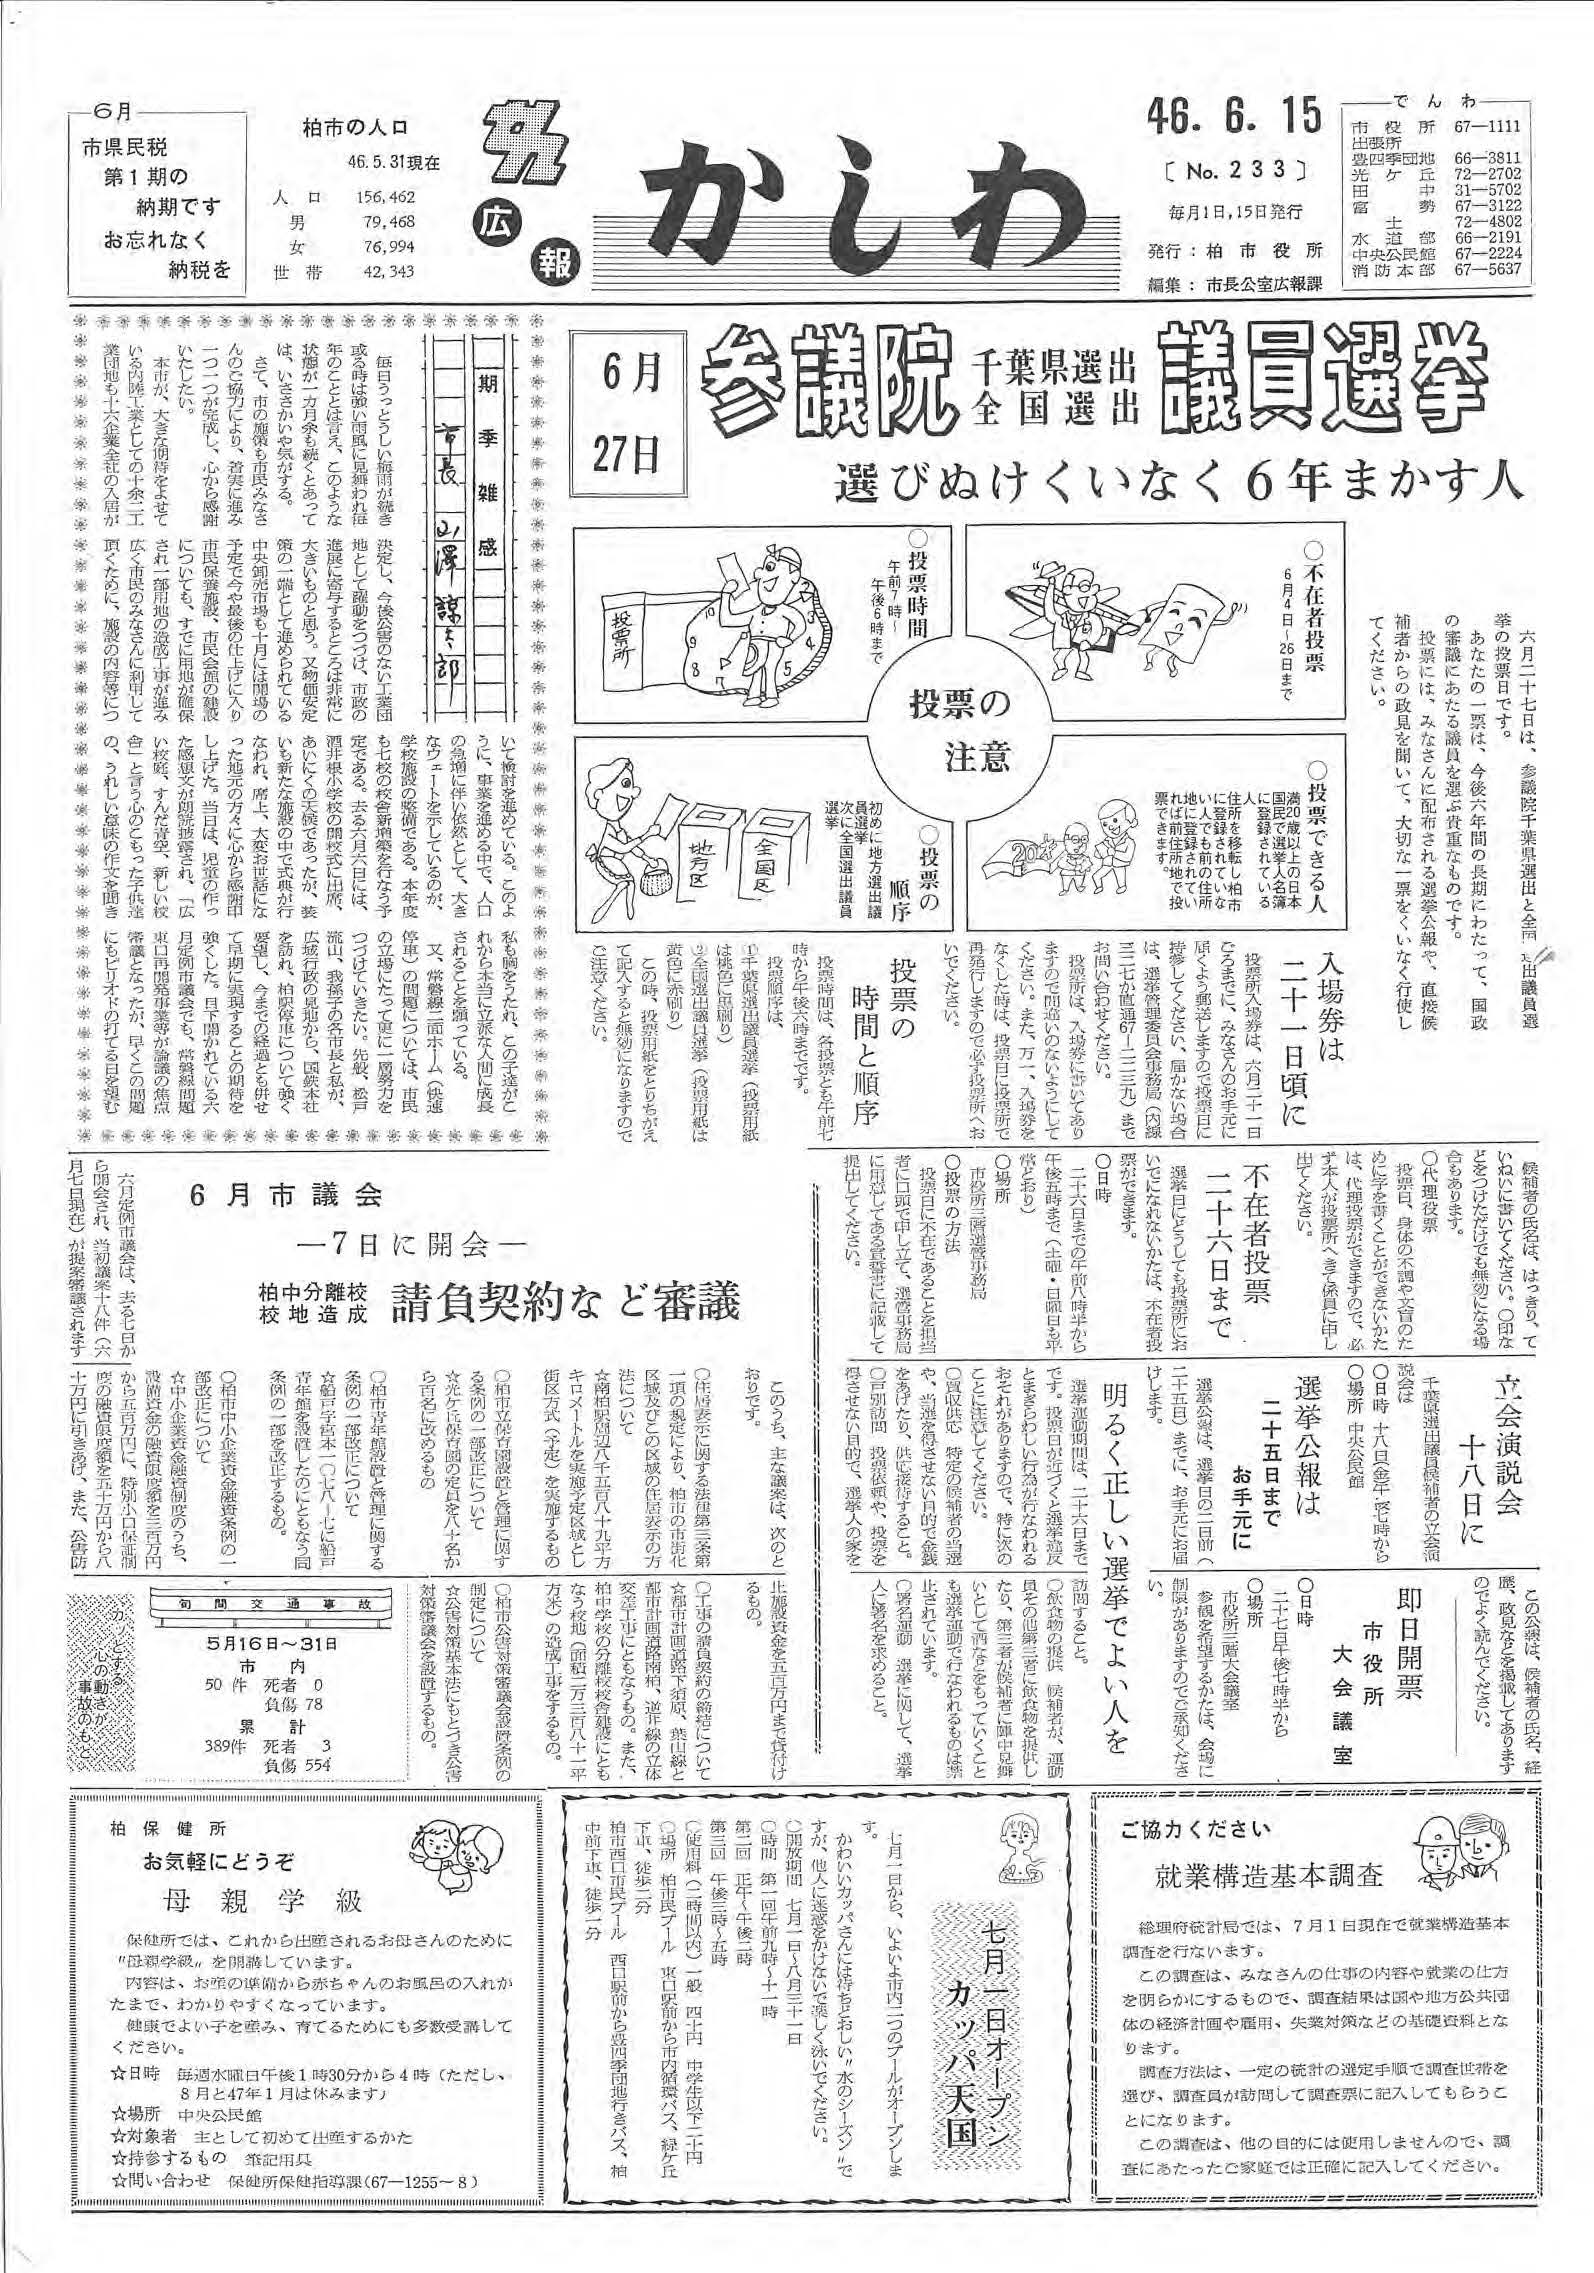 広報かしわ　昭和46年6月15日発行　233号